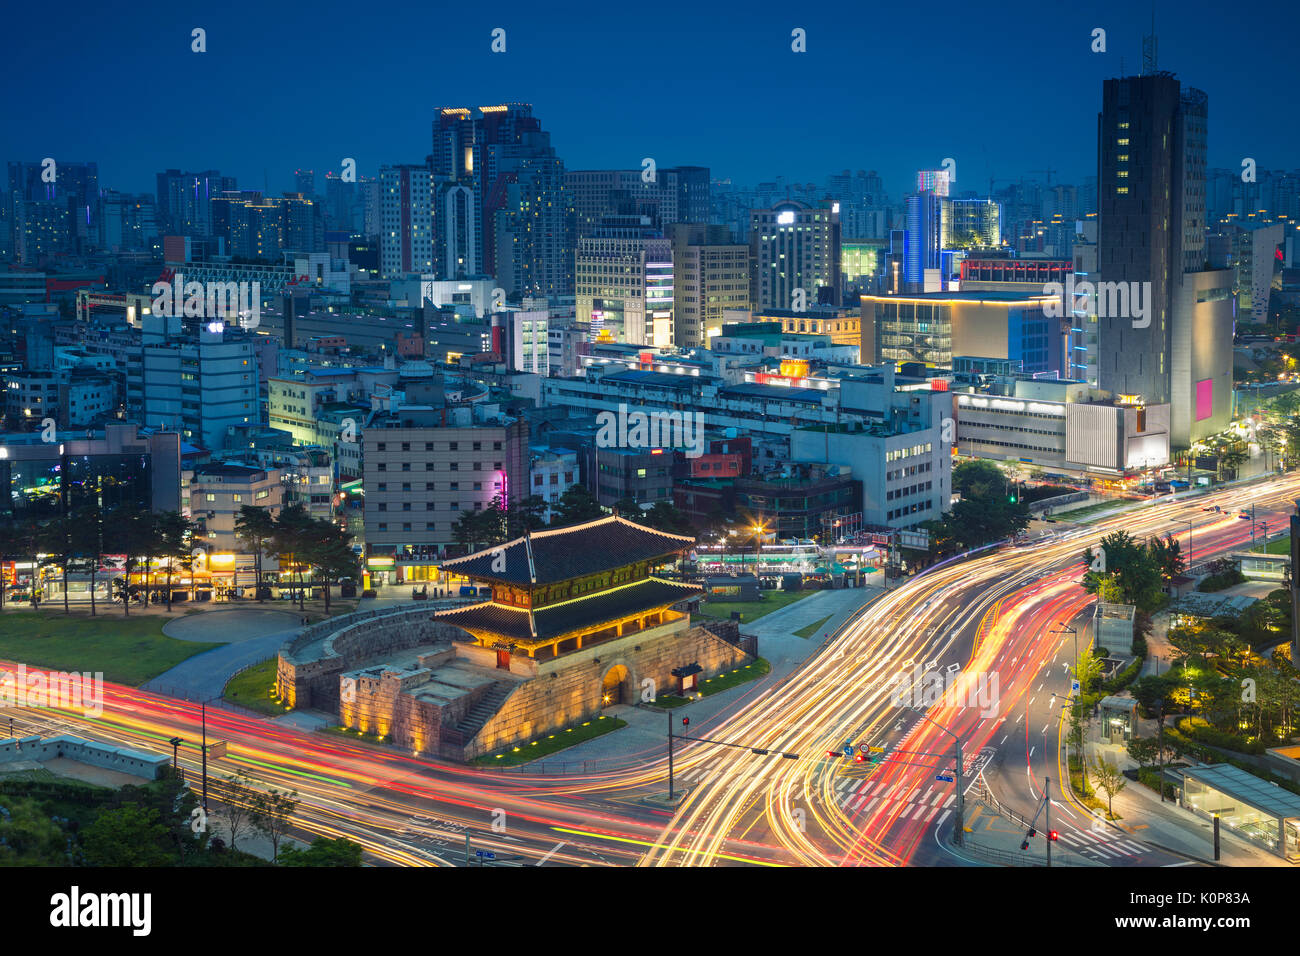 Séoul. image de centre-ville de Séoul avec porte dongdaemun pendant le crépuscule heure bleue. Banque D'Images